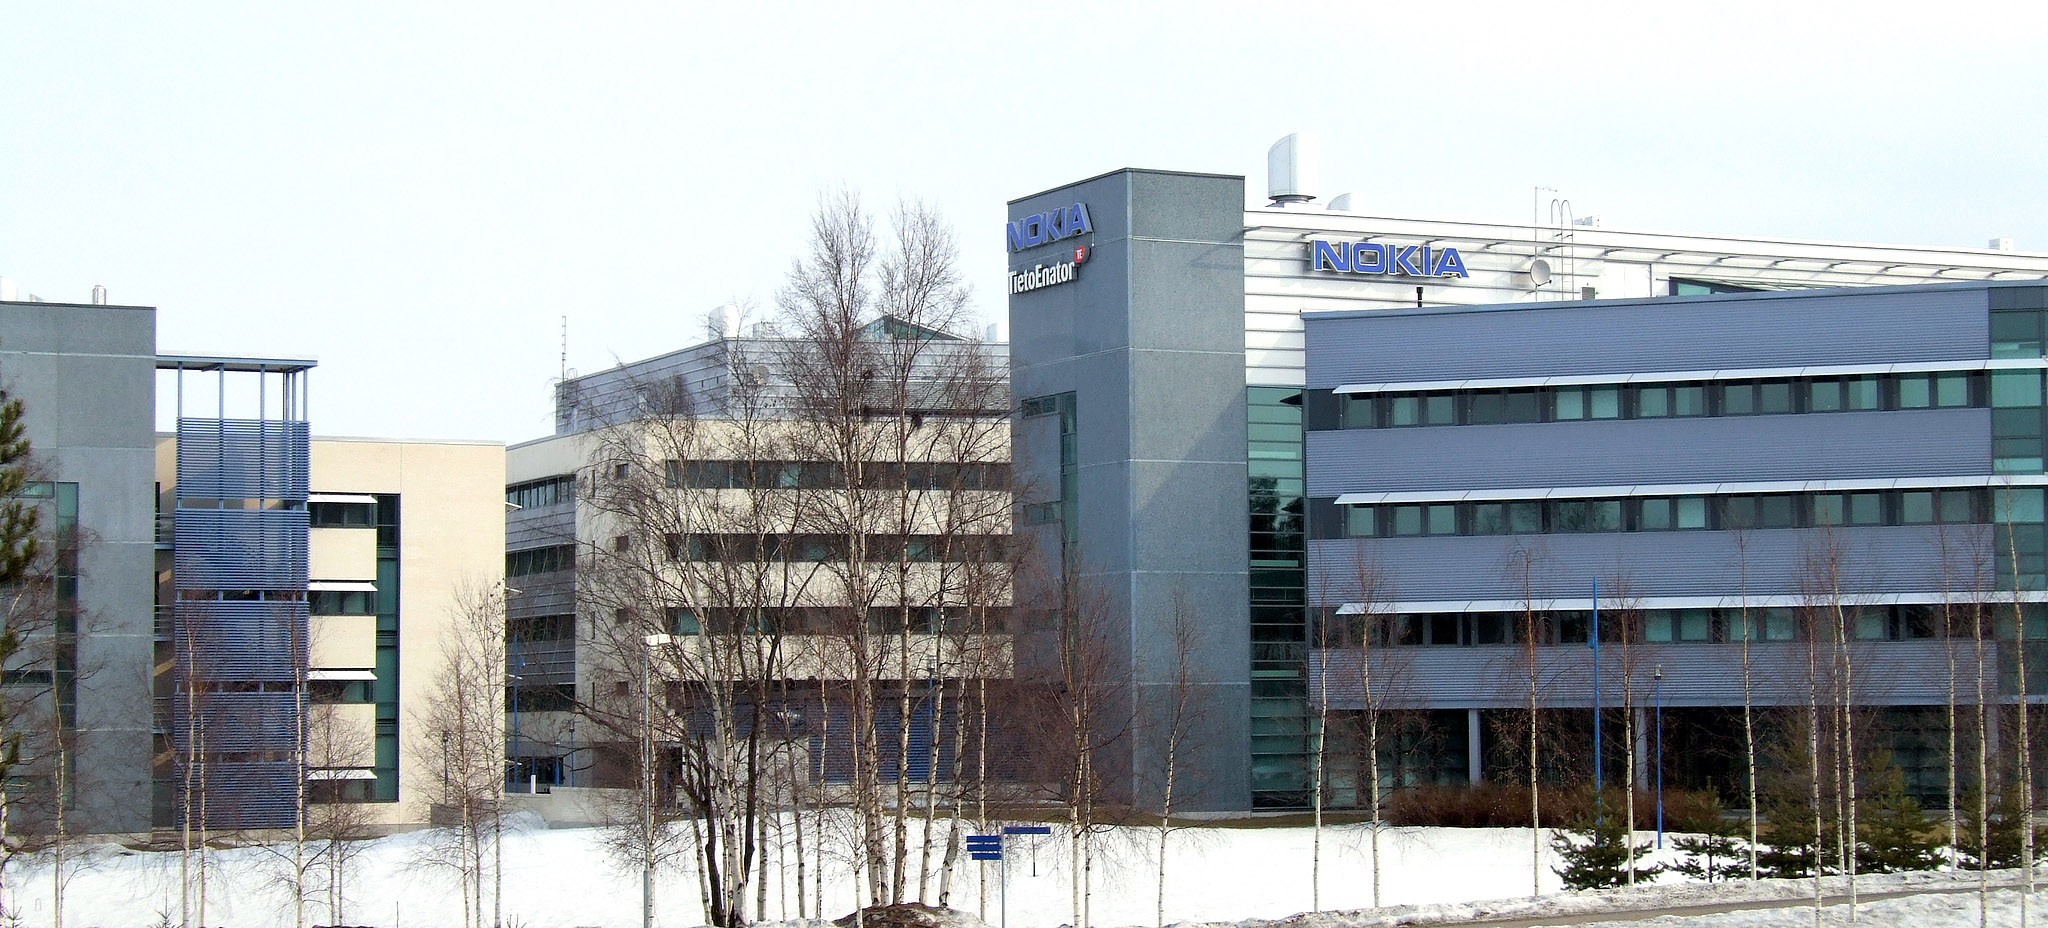 משרדי נוקיה בפינלנד